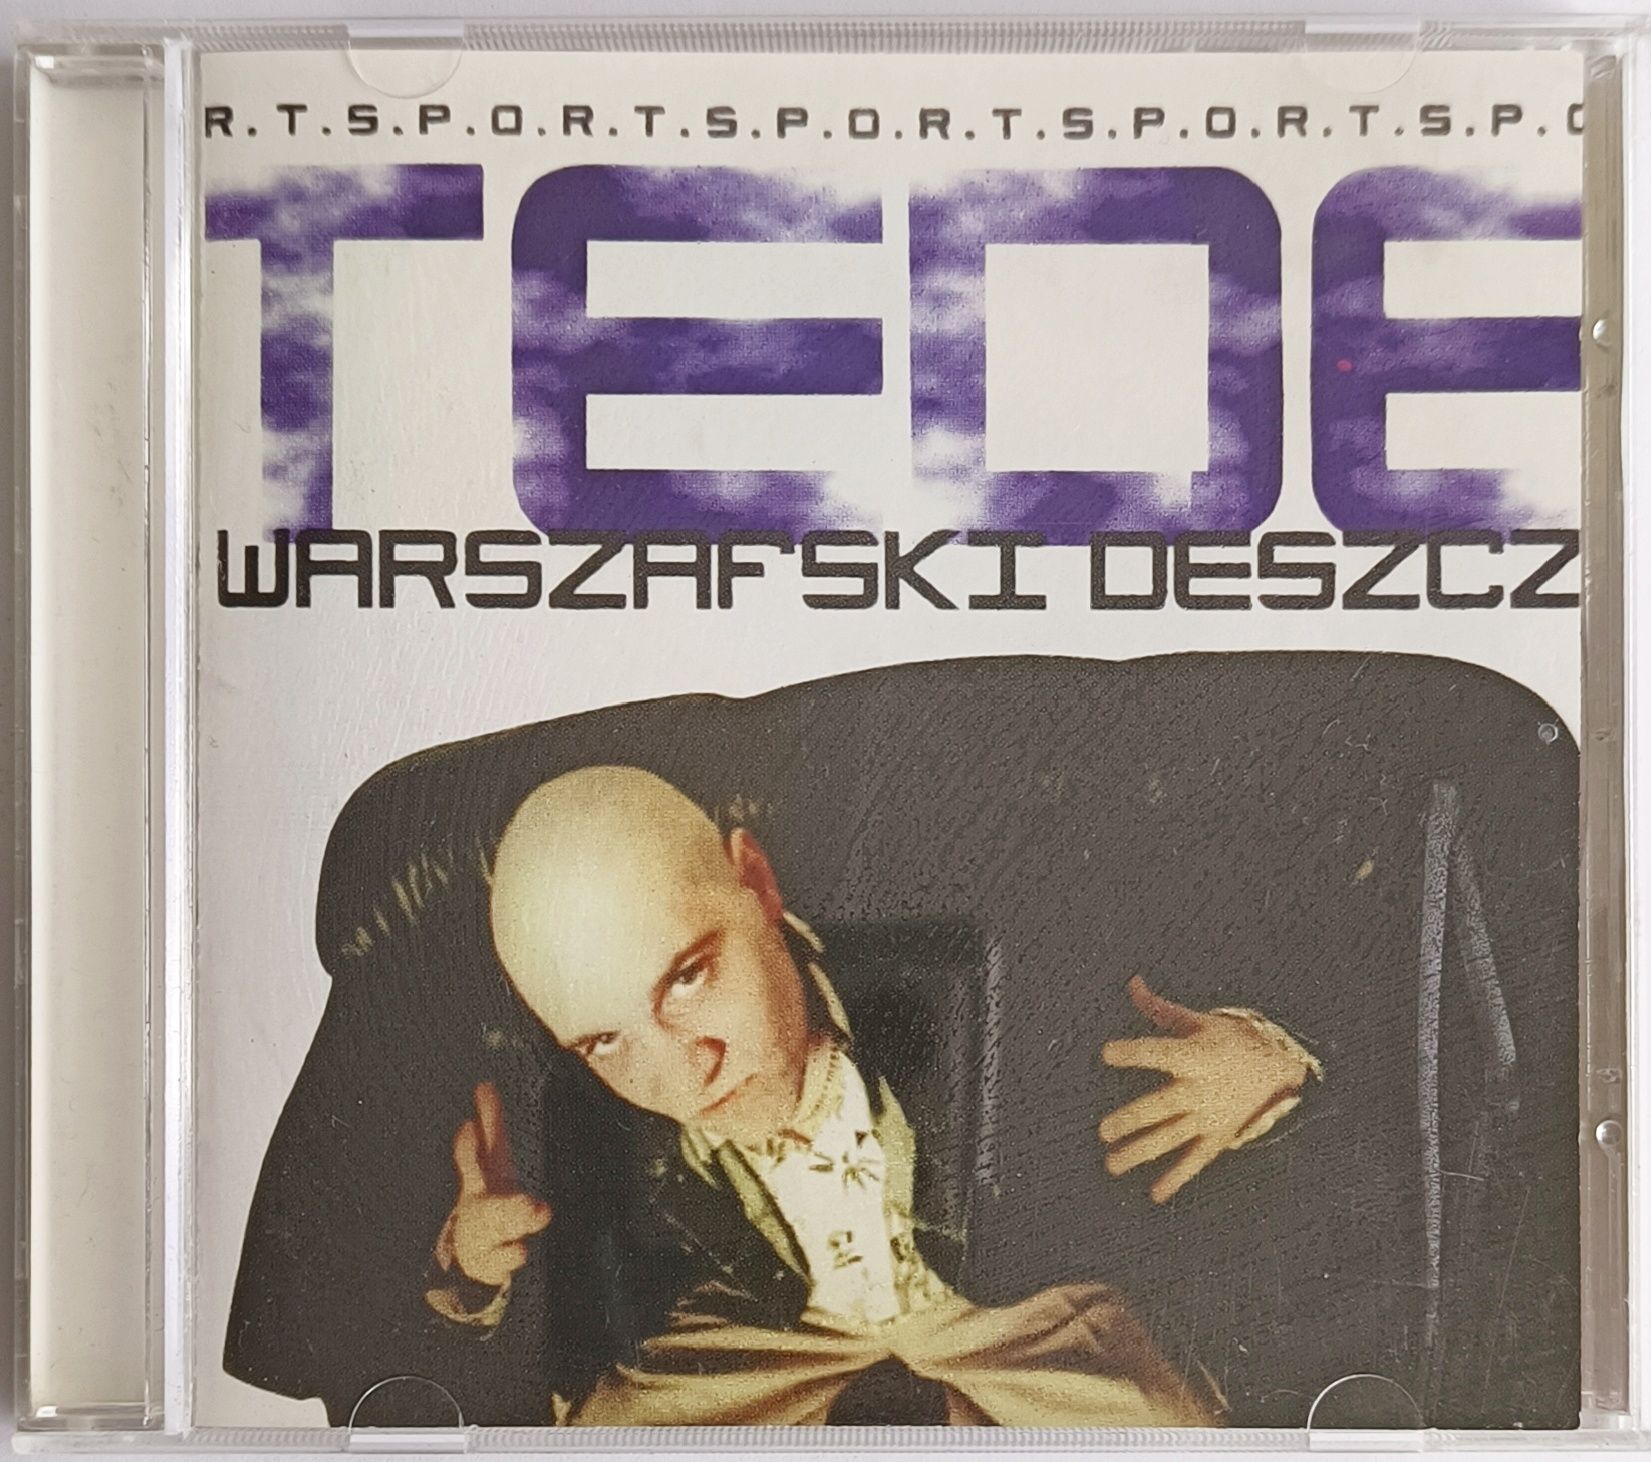 TEDE Warszawski Deszcz S.P.O.R.T 2007r